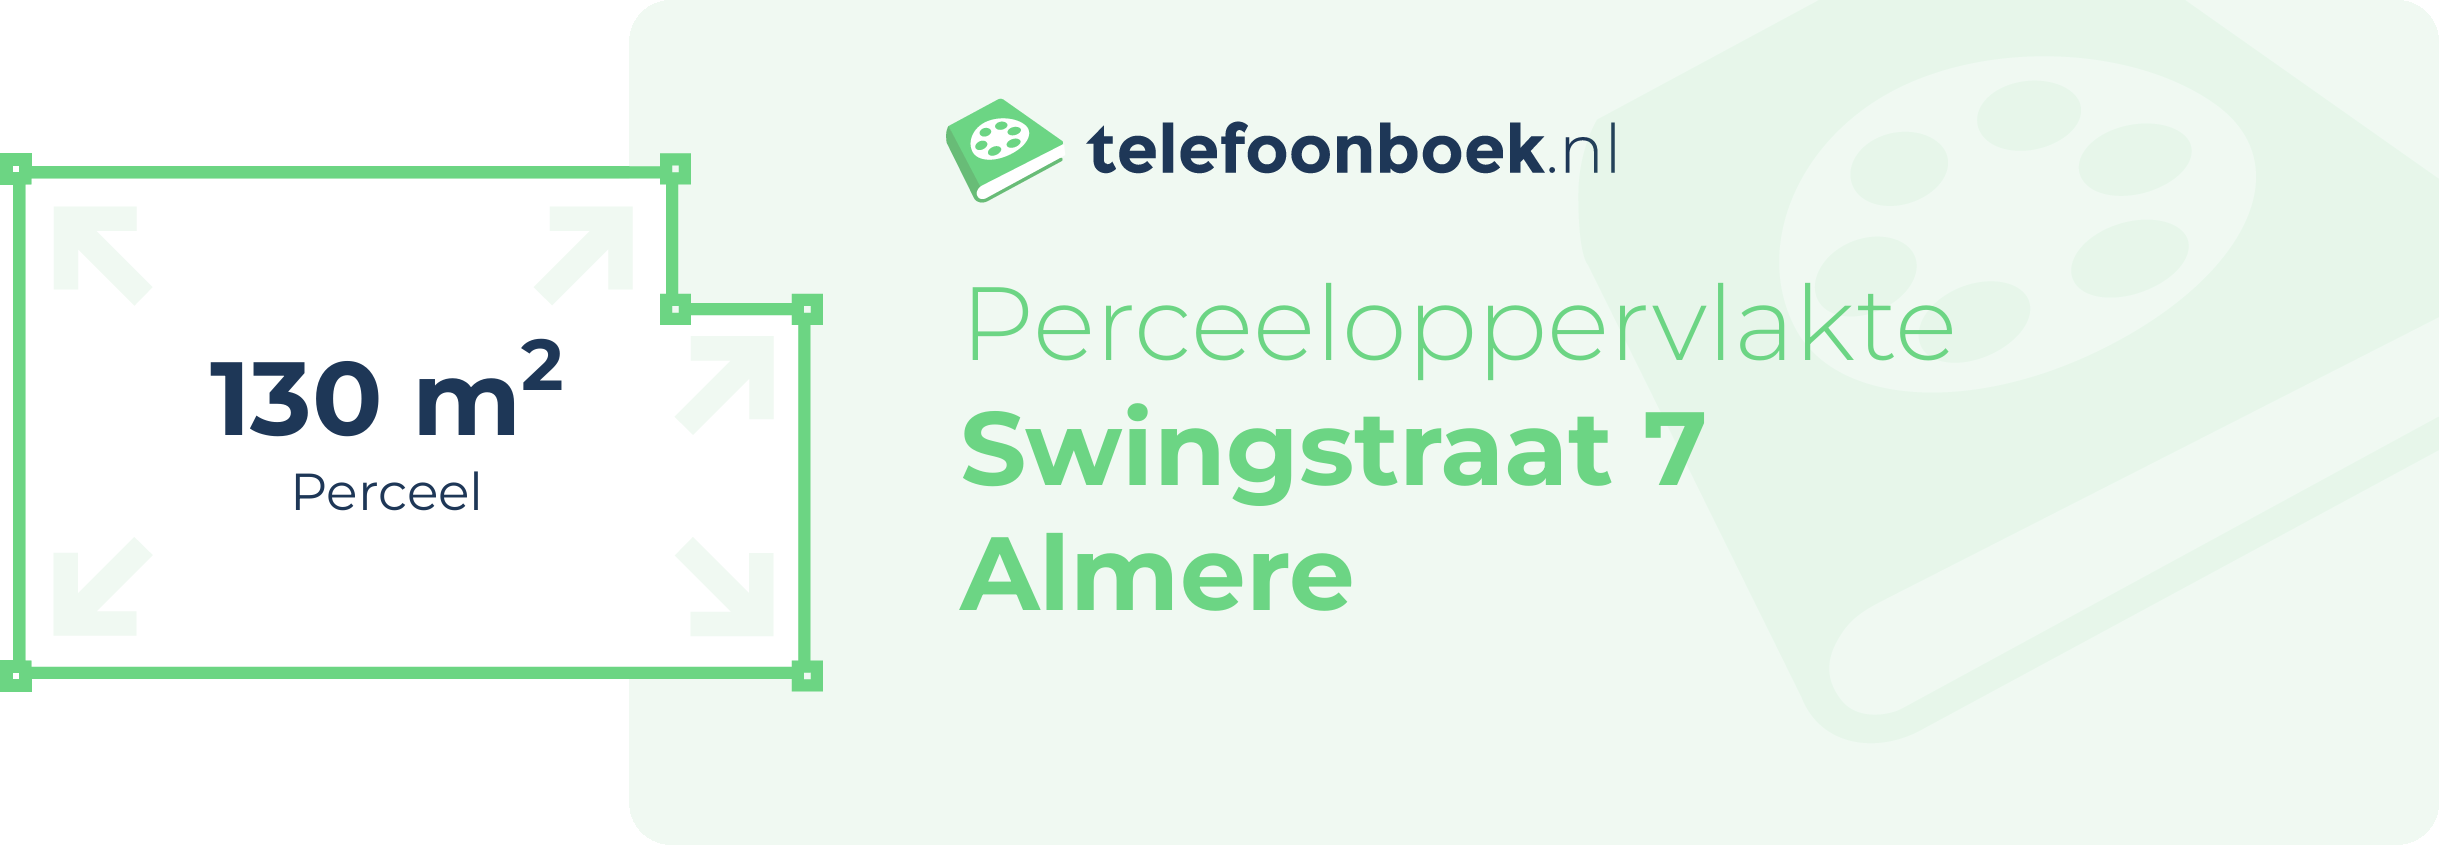 Perceeloppervlakte Swingstraat 7 Almere